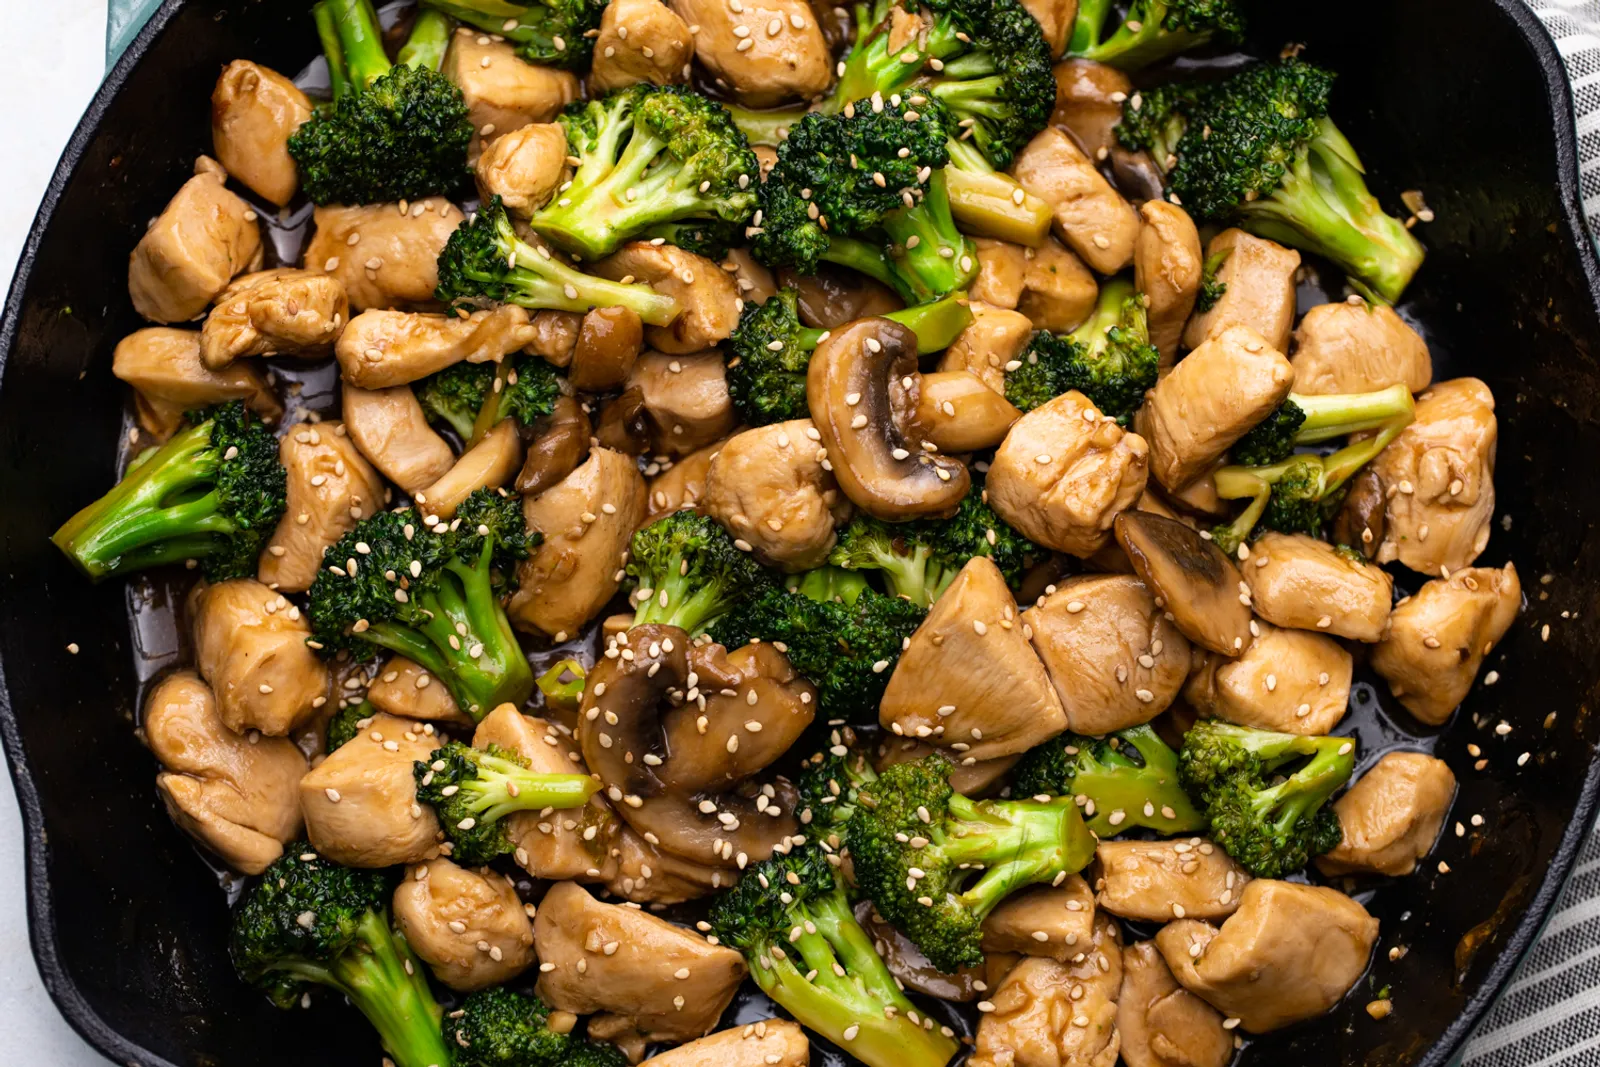 Resep Tumis Ayam Brokoli, Menu Mewah Sederhana Cocok Bagi Anak Kos